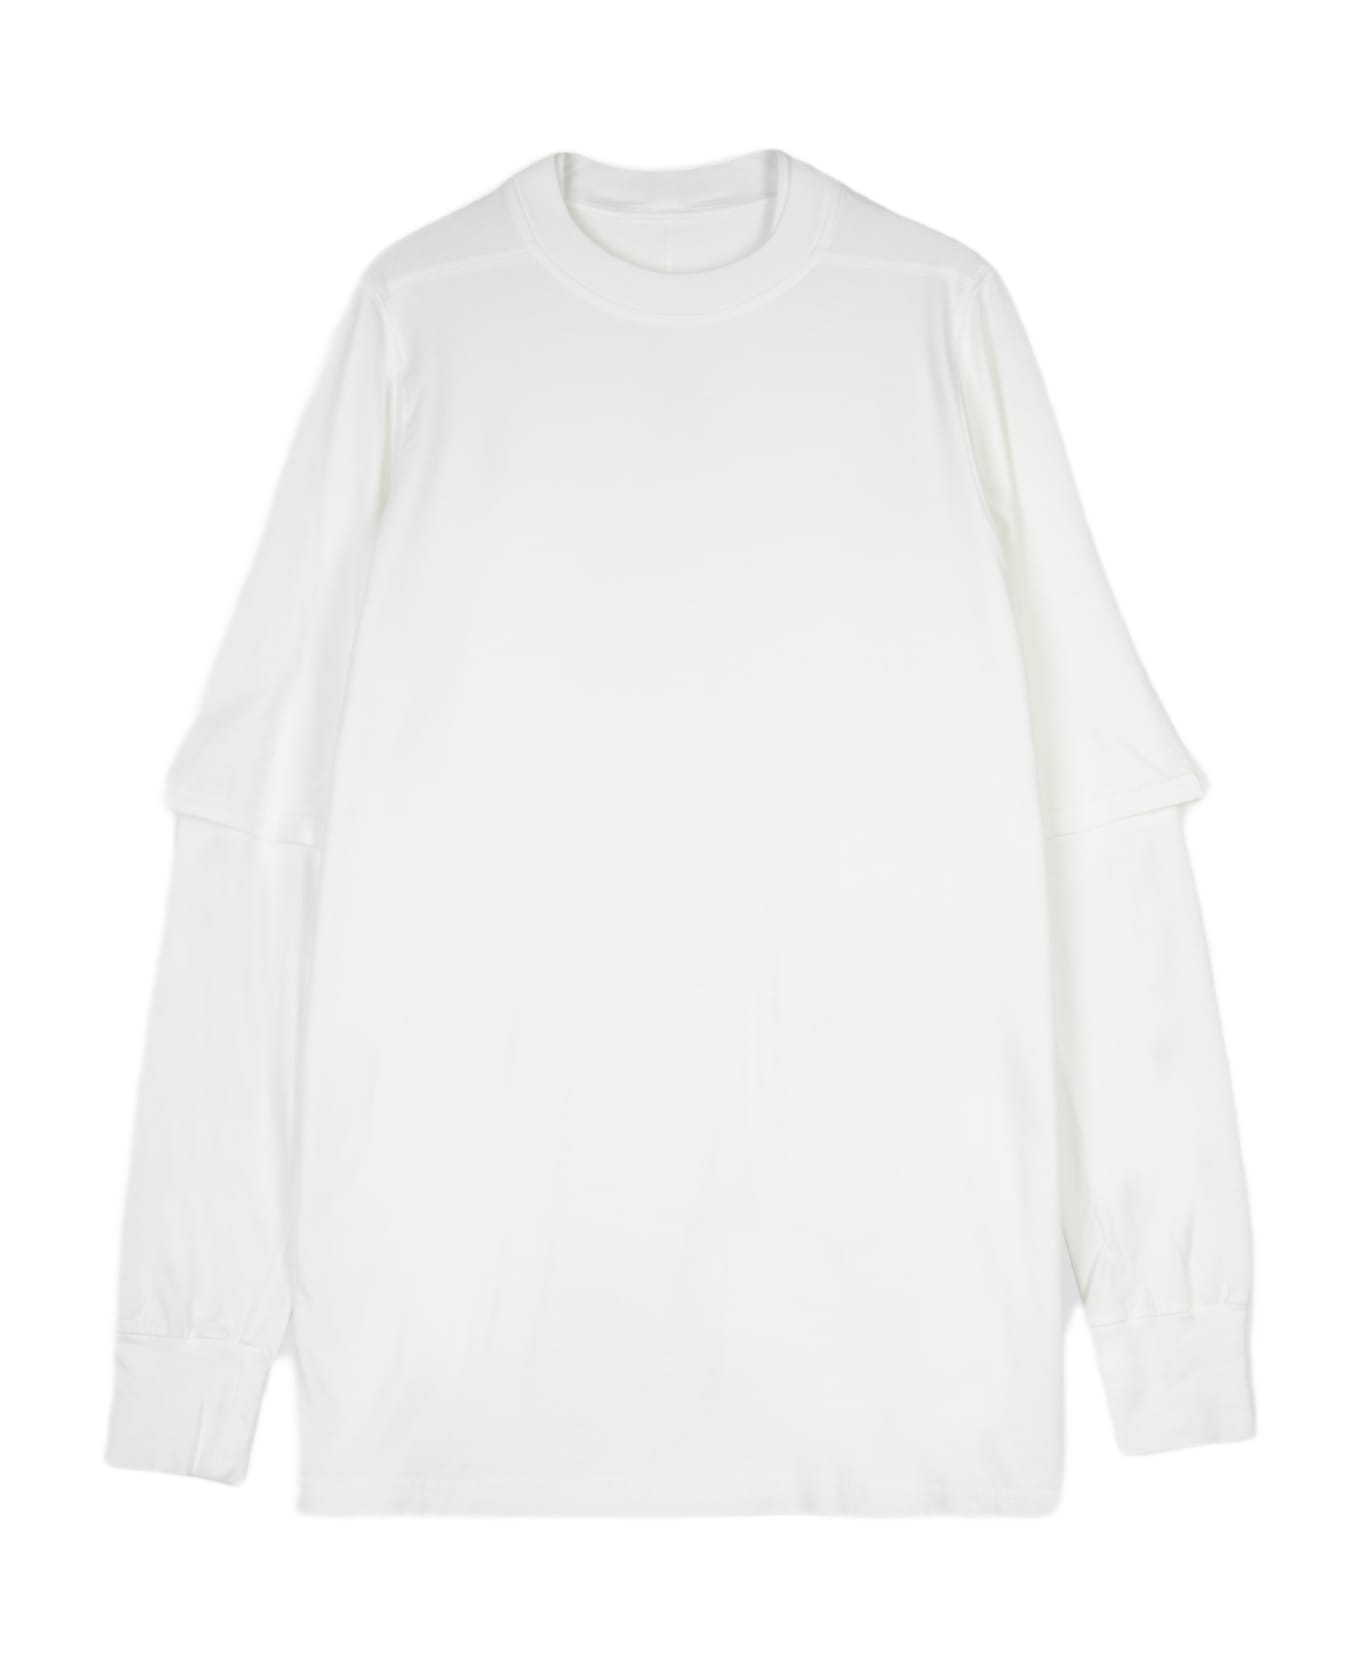 DRKSHDW Hustler T White Cotton Layered T-shirt With Long Sleeves - Hustler T - Latte シャツ